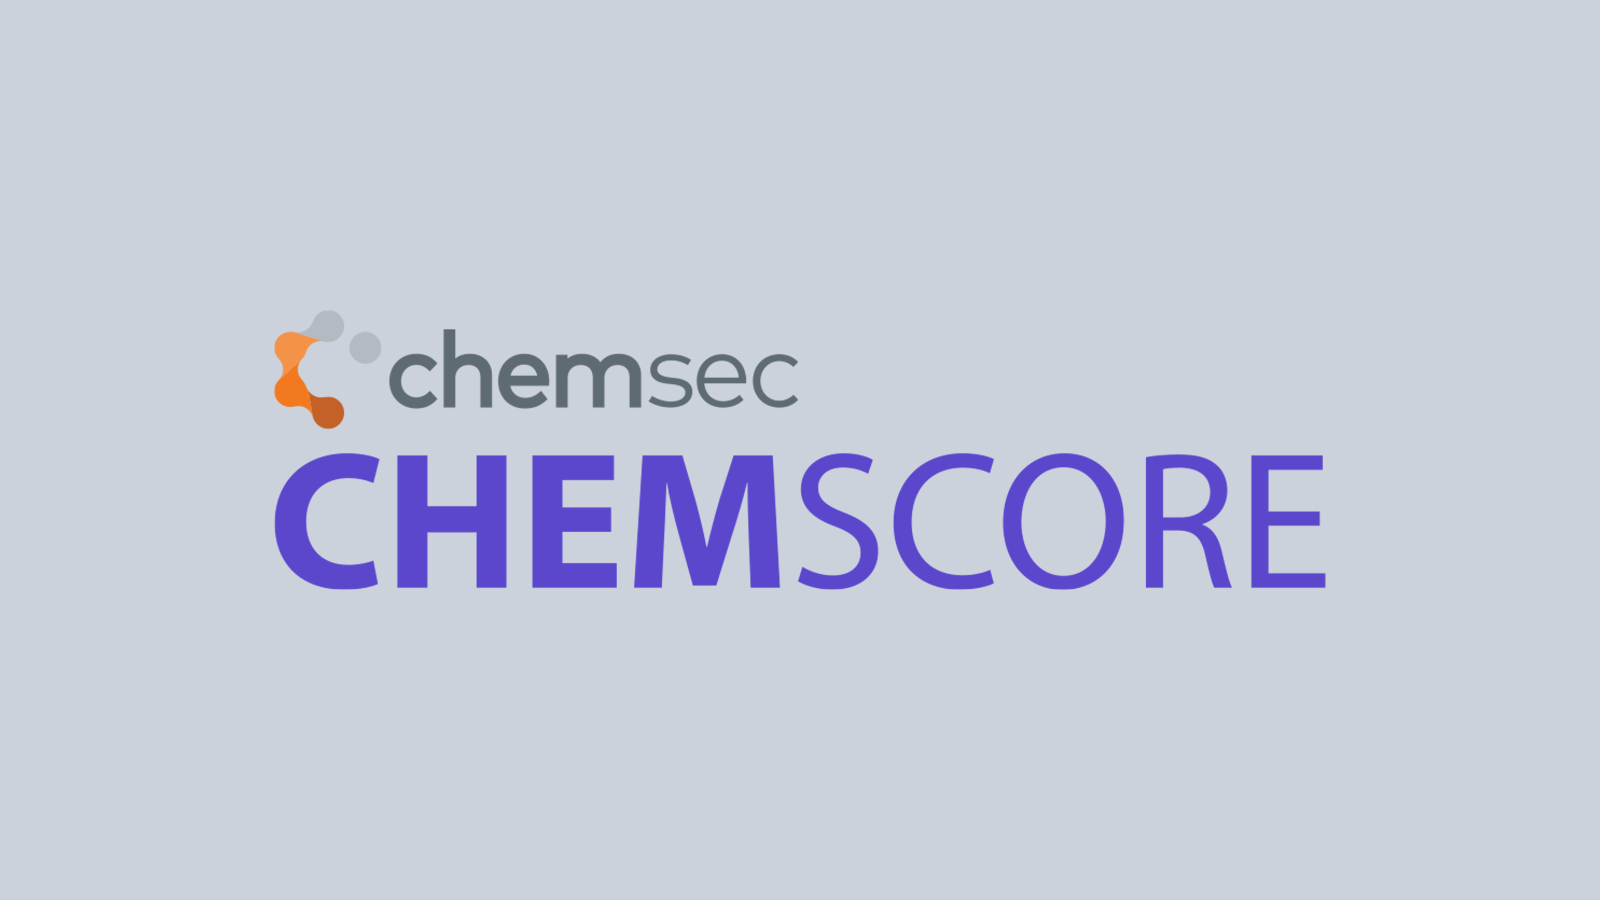 ChemScore 2021: Key Results